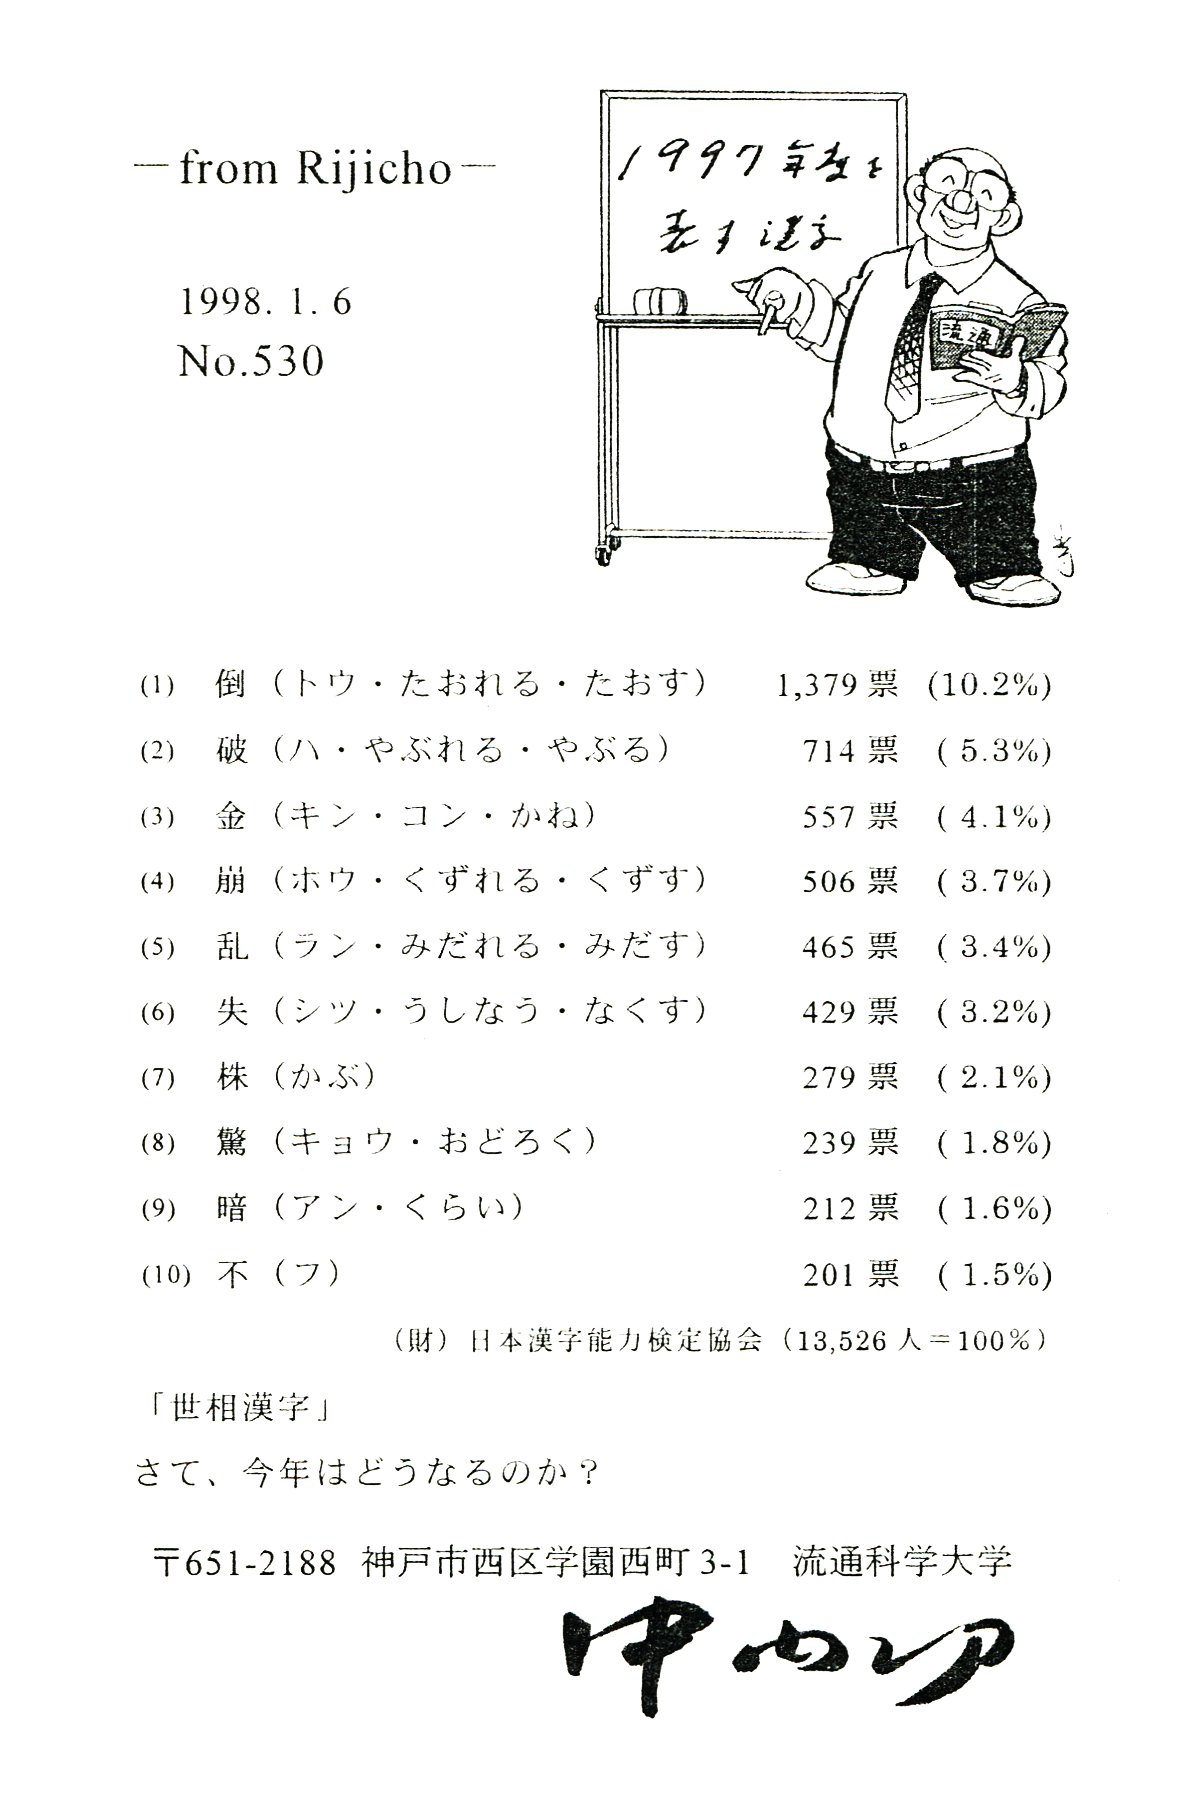 1997年度を表す漢字